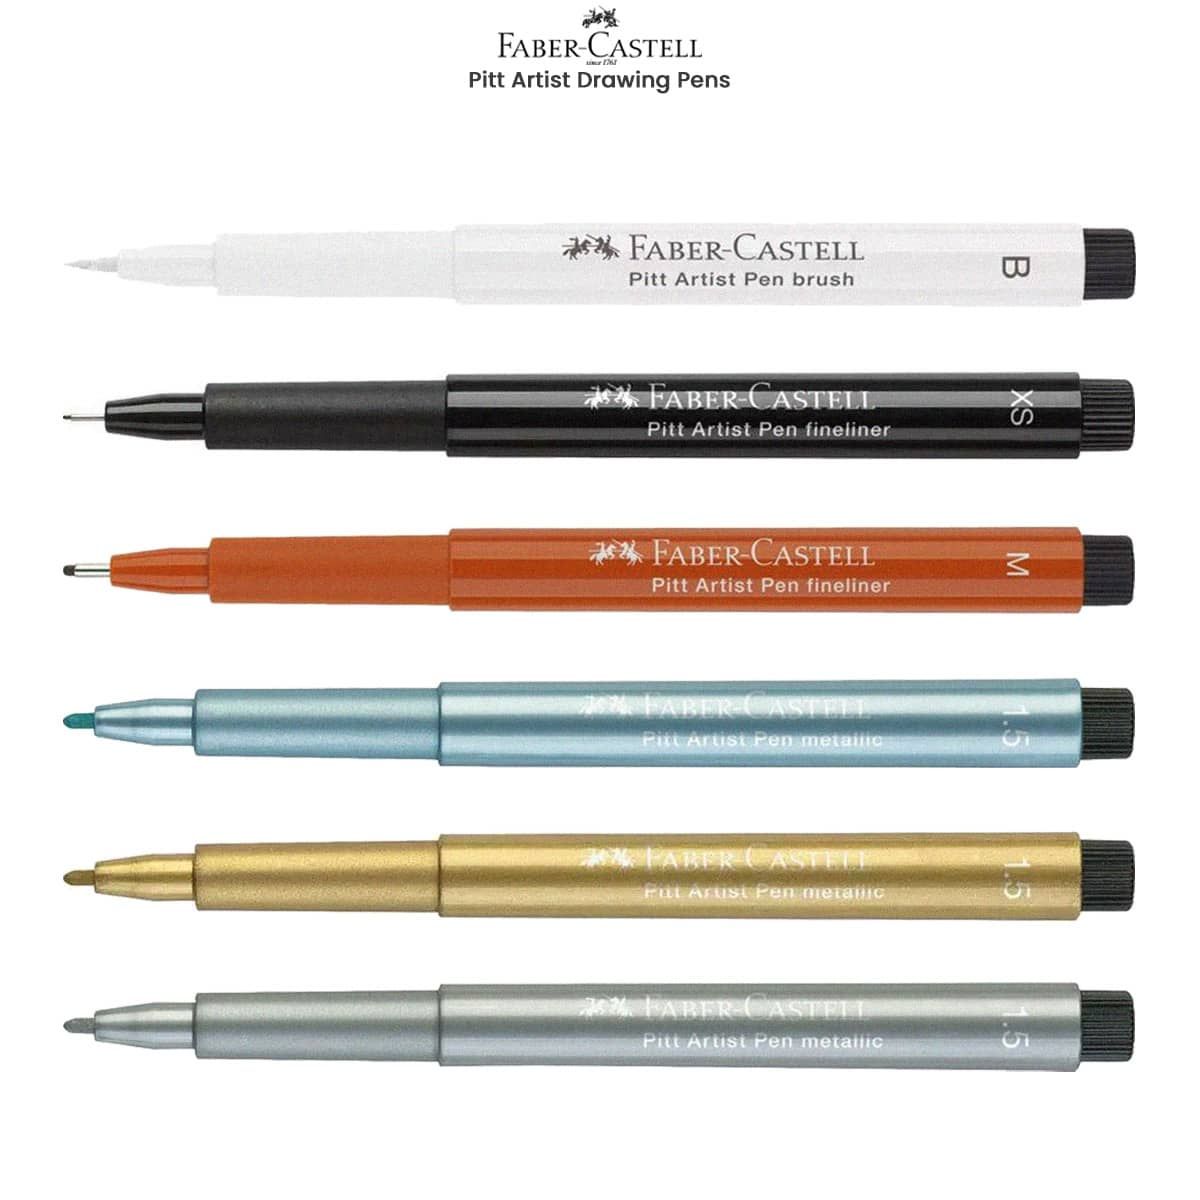  Faber-Castell Pitt Artist Pens - Brush Lettering - 4